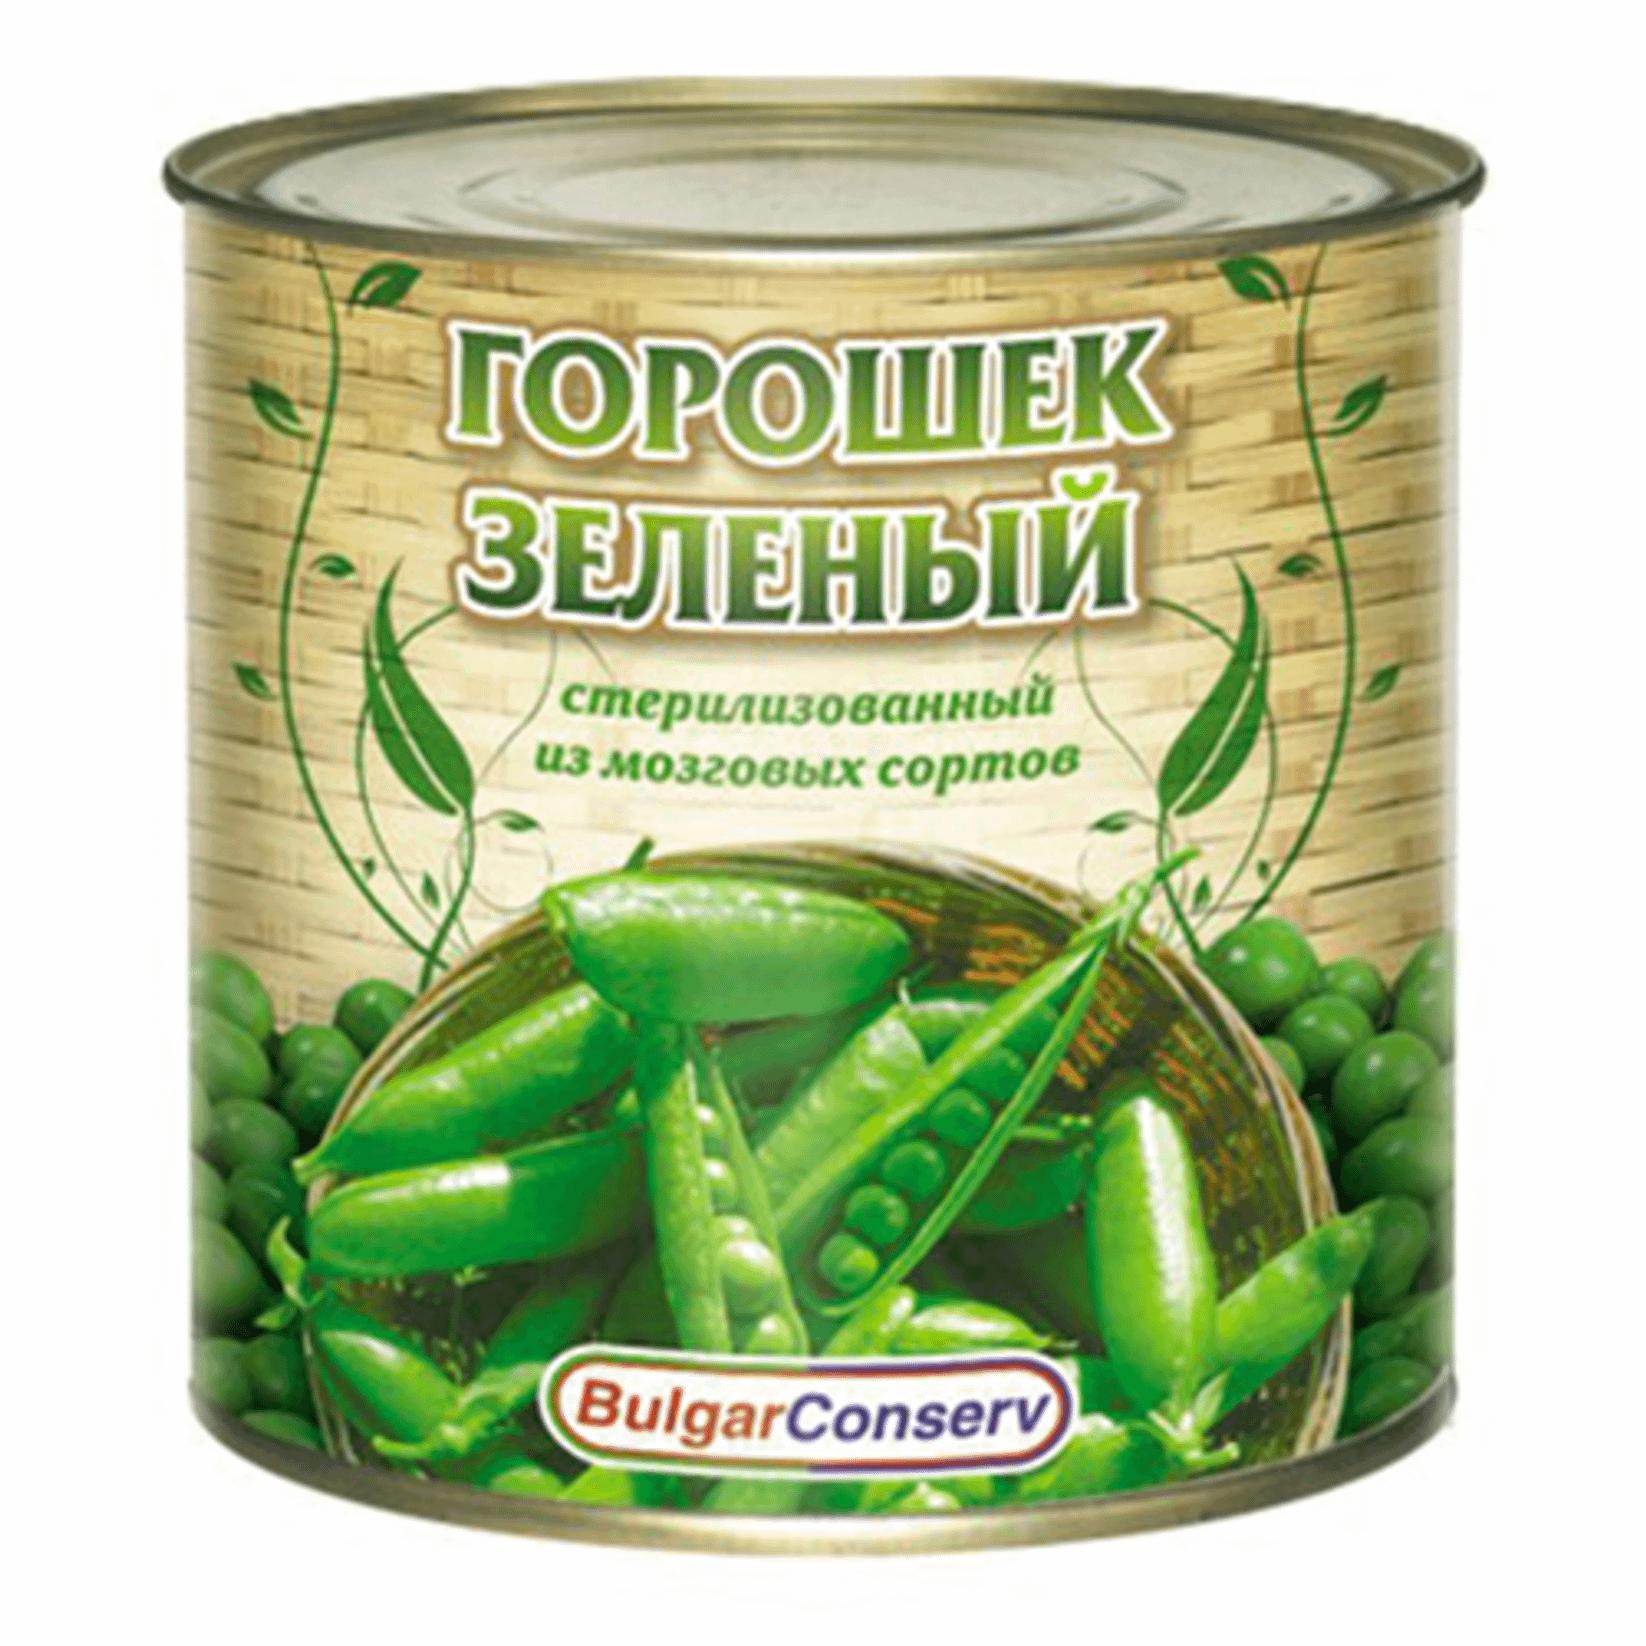 Горошек зеленый BulgarConserv 400 гр., ж/б